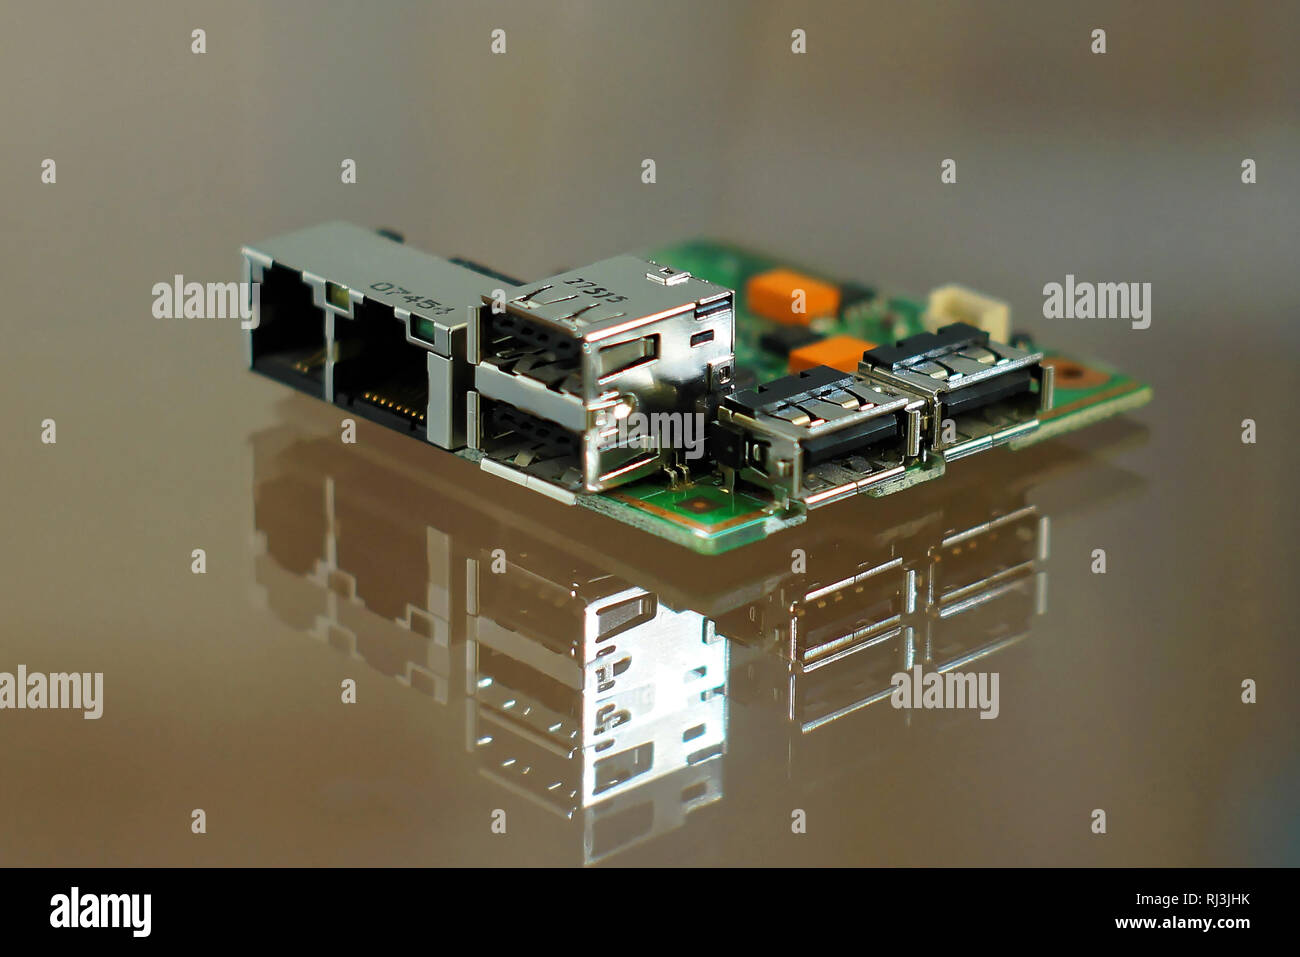 Mikrocomputer board - elektronische Komponenten auf Leiterplatten montierten-Leiterplatte mit Netzwerk, Telefon- und USB-Anschlüsse an Bord Seiten. Stockfoto